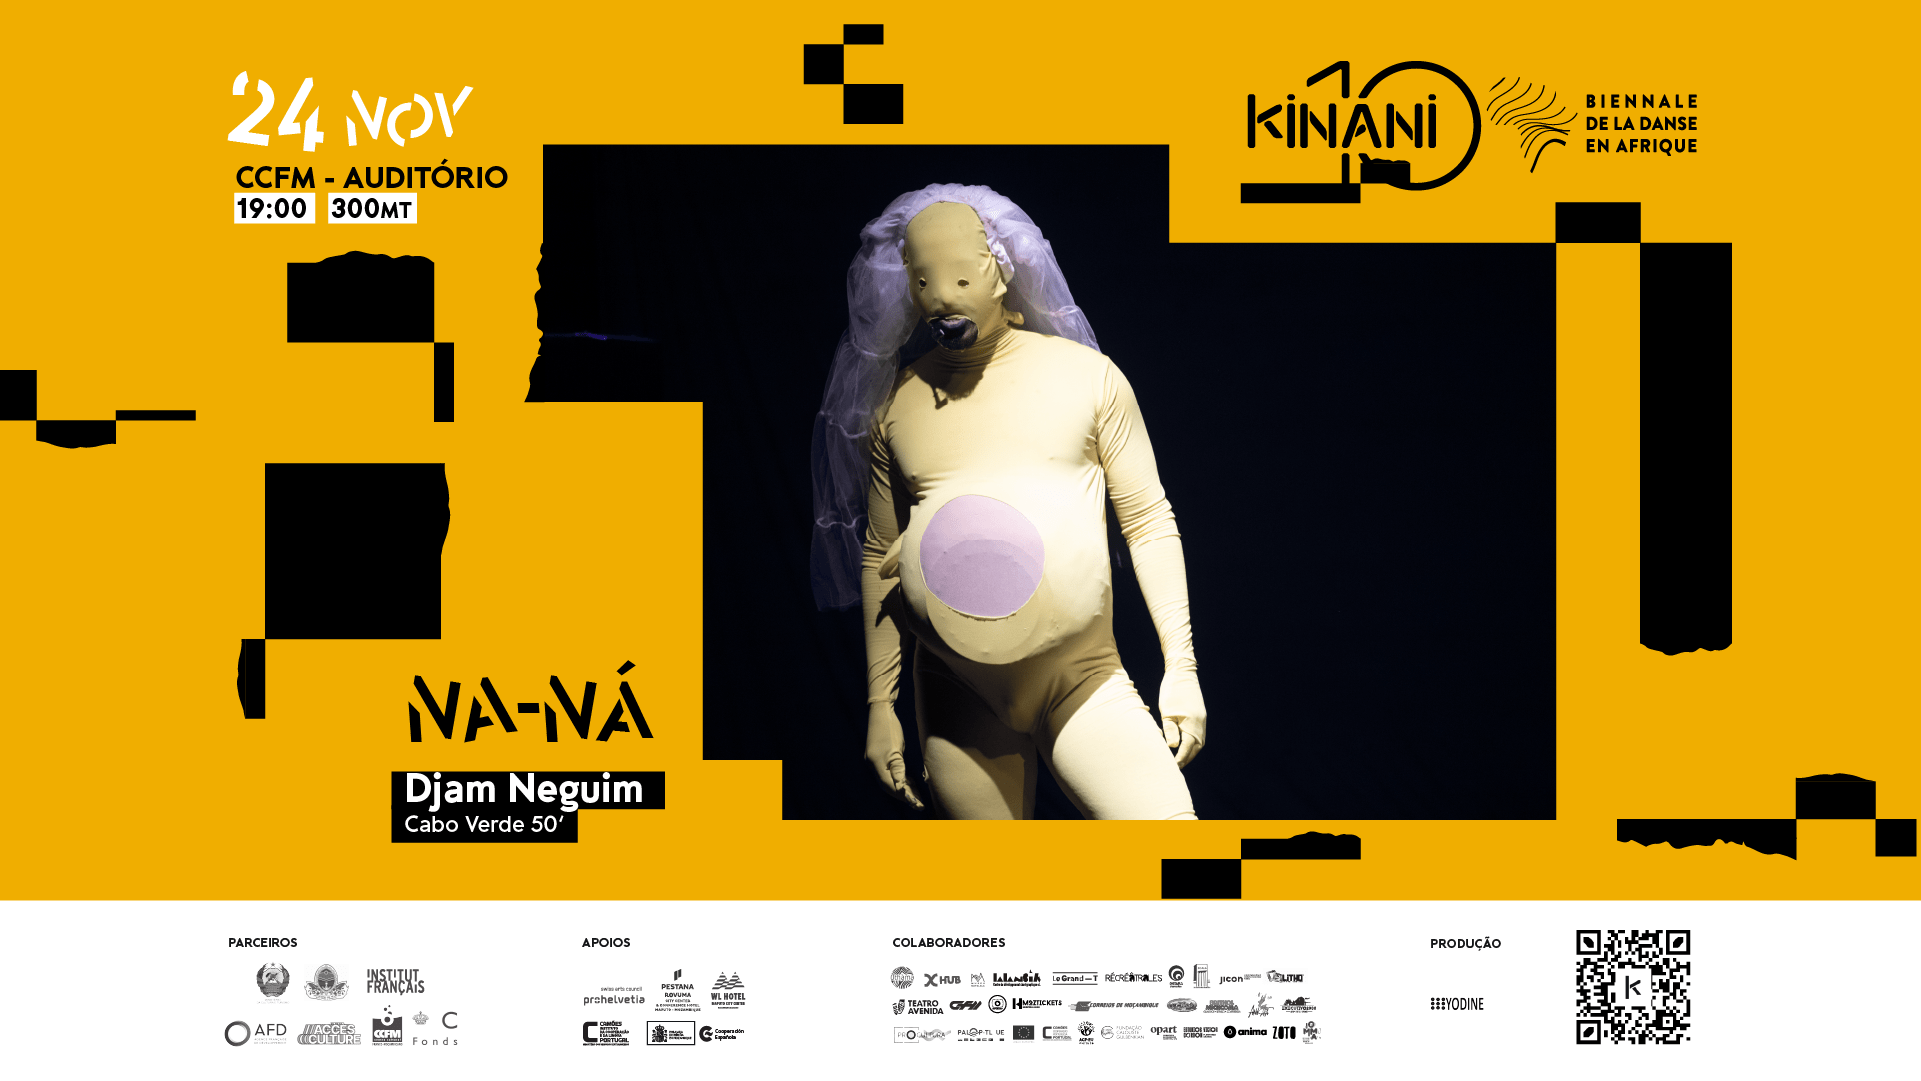 KINANI - Biennale de la Danse en Afrique | "Na-Ná" de Djam Neguim